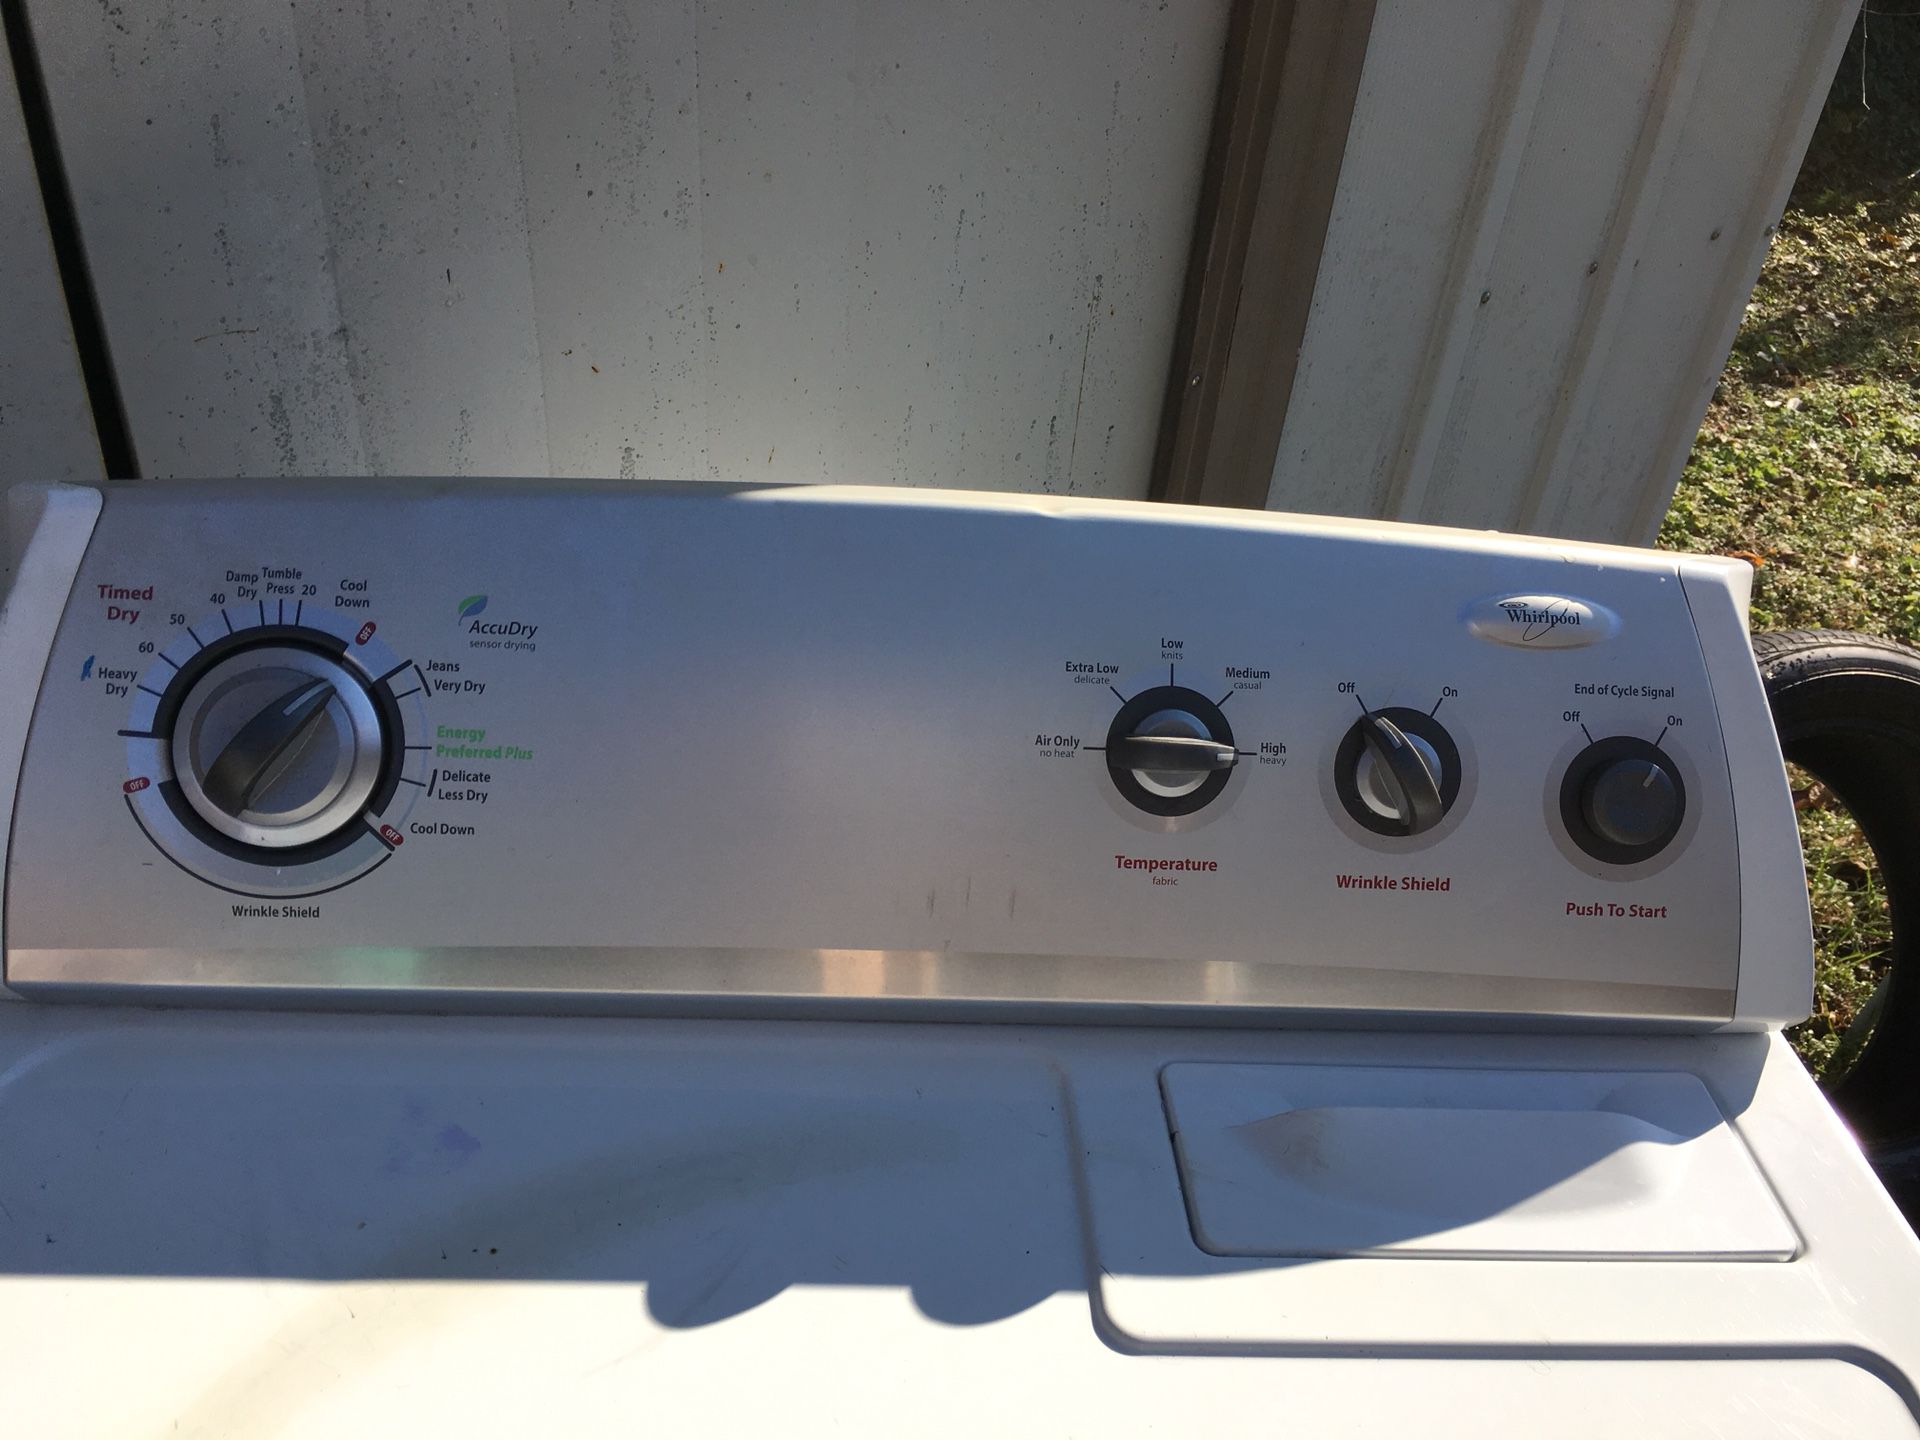 Whirlpool washer and dryer machine, sensor drying.